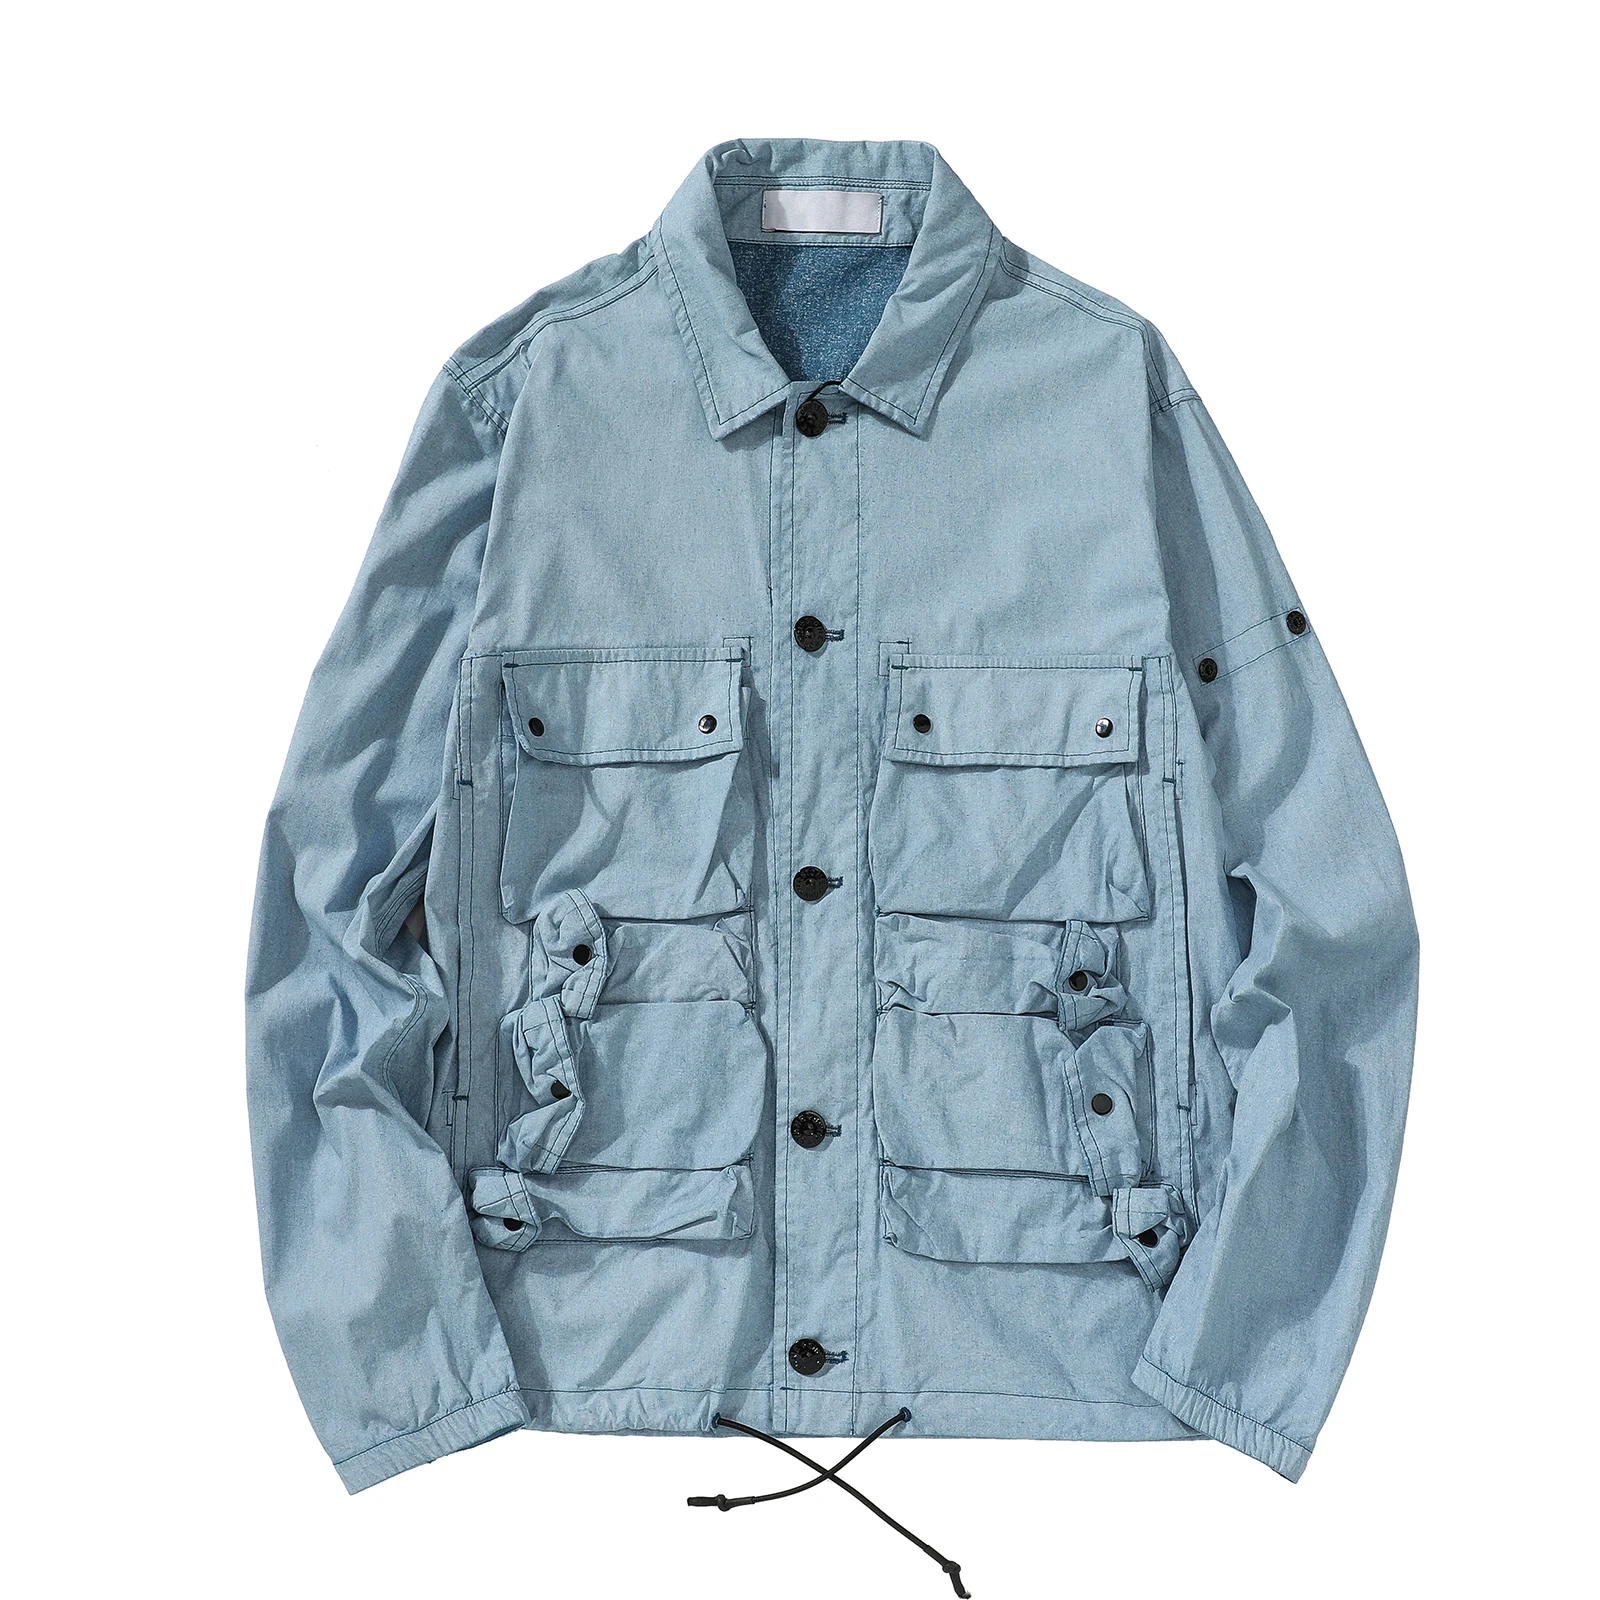 

Куртка мужская с компасом, брендовая оригинальная куртка с технологией голубой окрашивания, пианино с карманами, весна-осень